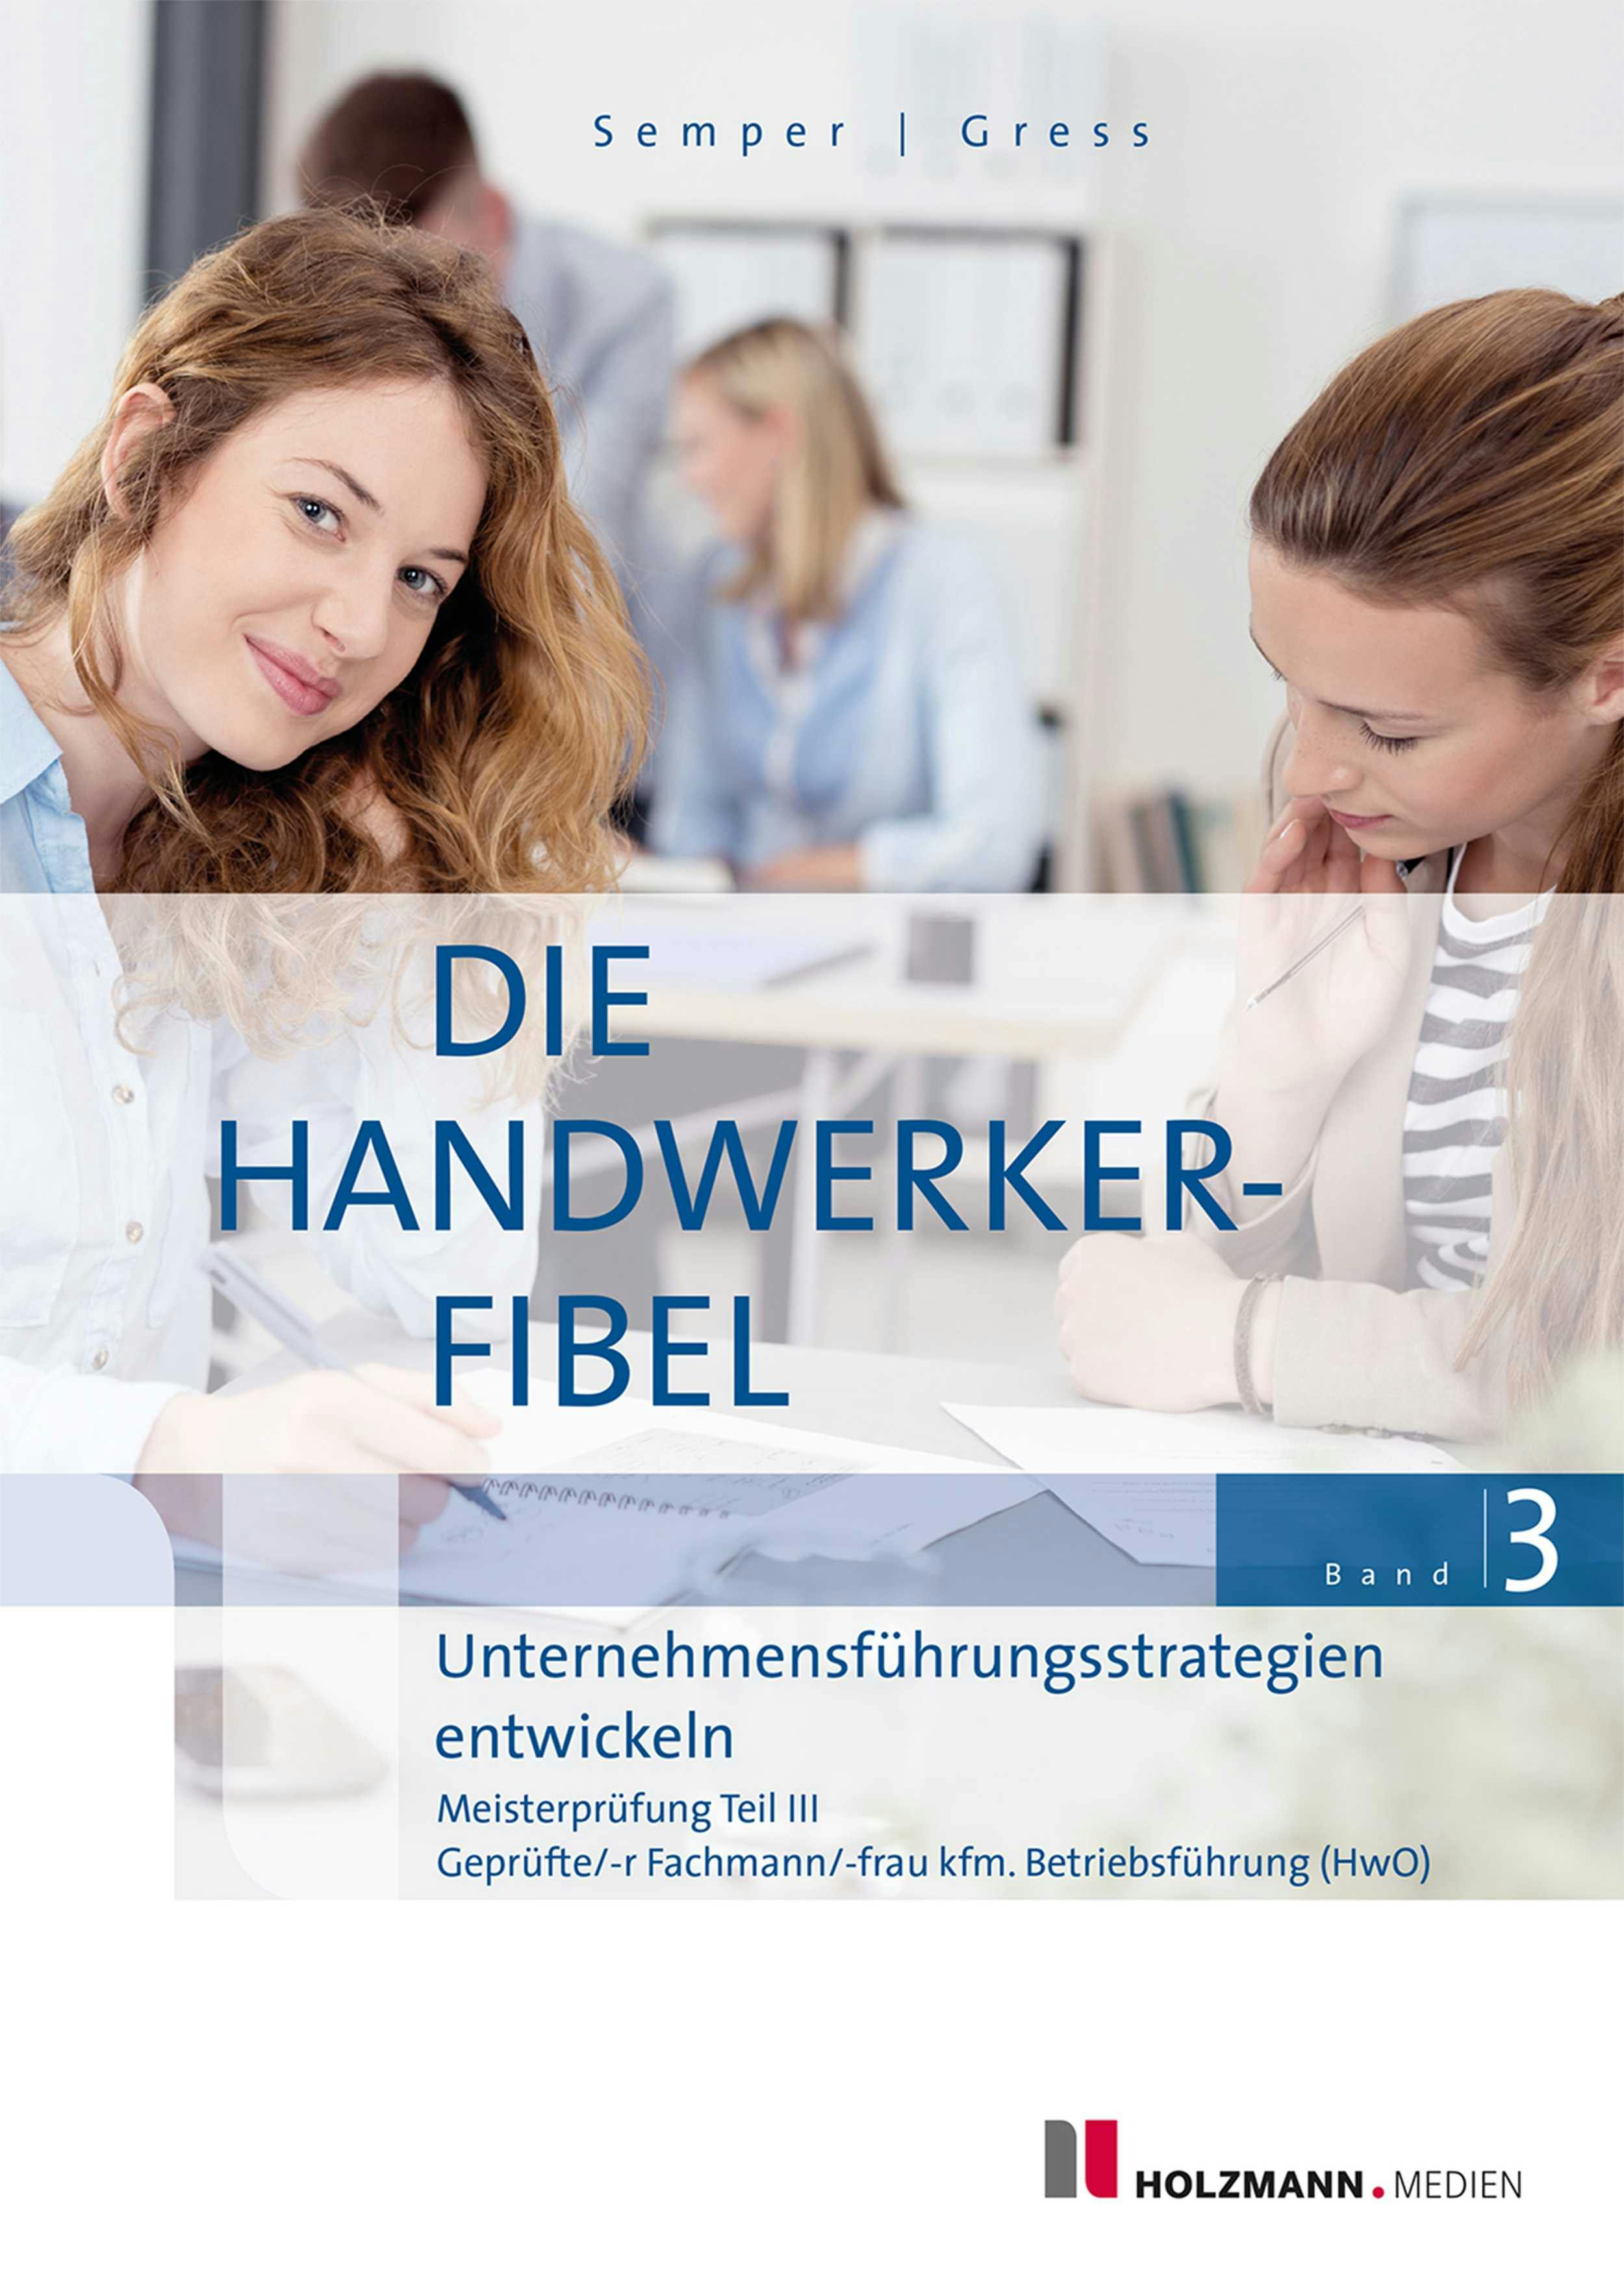 "Die Handwerker-Fibel", Band 3 - Bernhard Gress, Dr. Lothar Semper